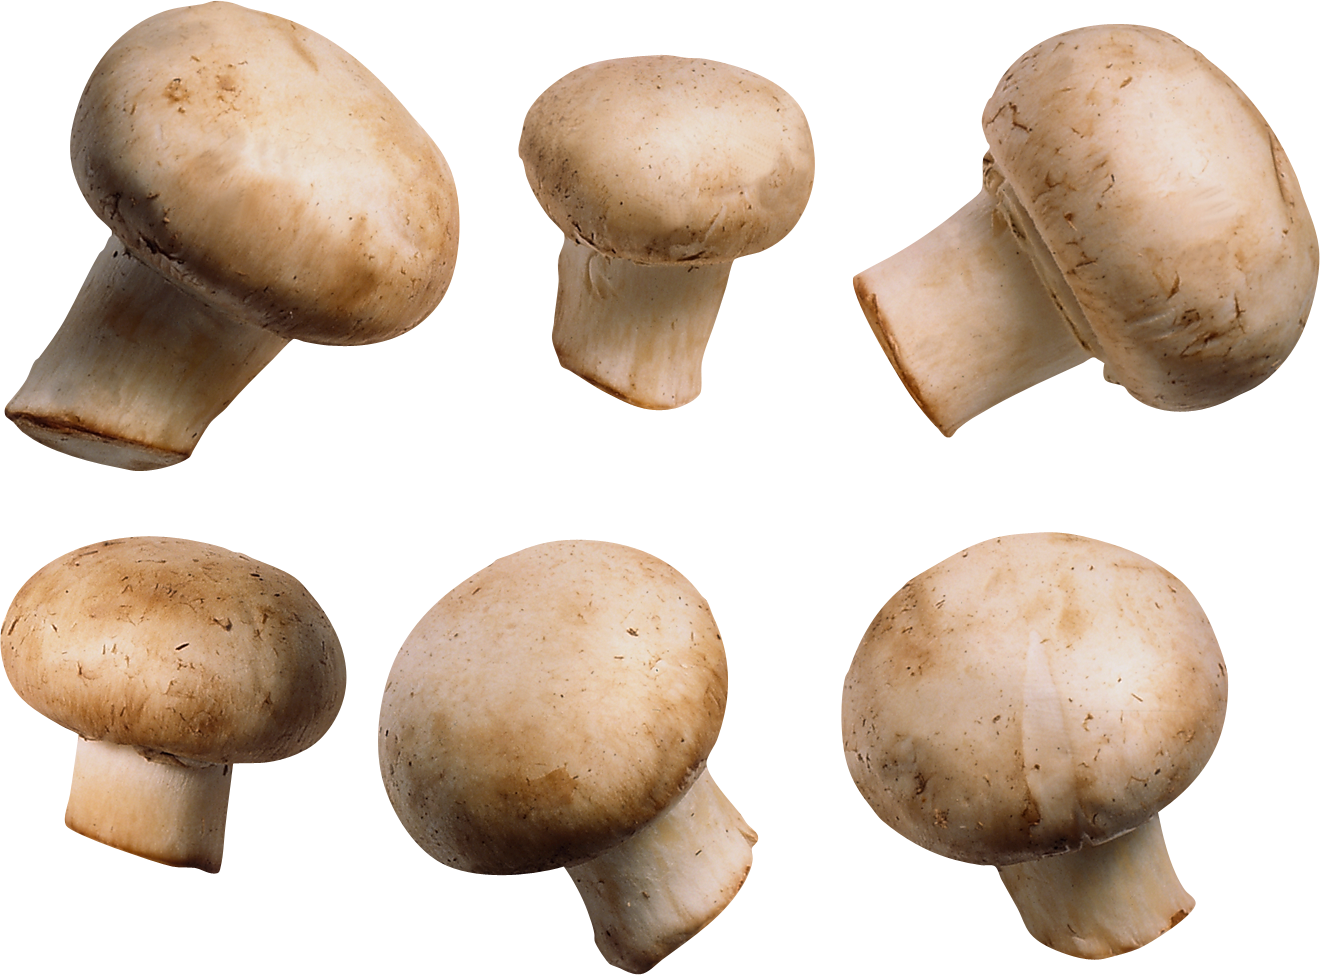 mushroom images mushroom pictures #9094